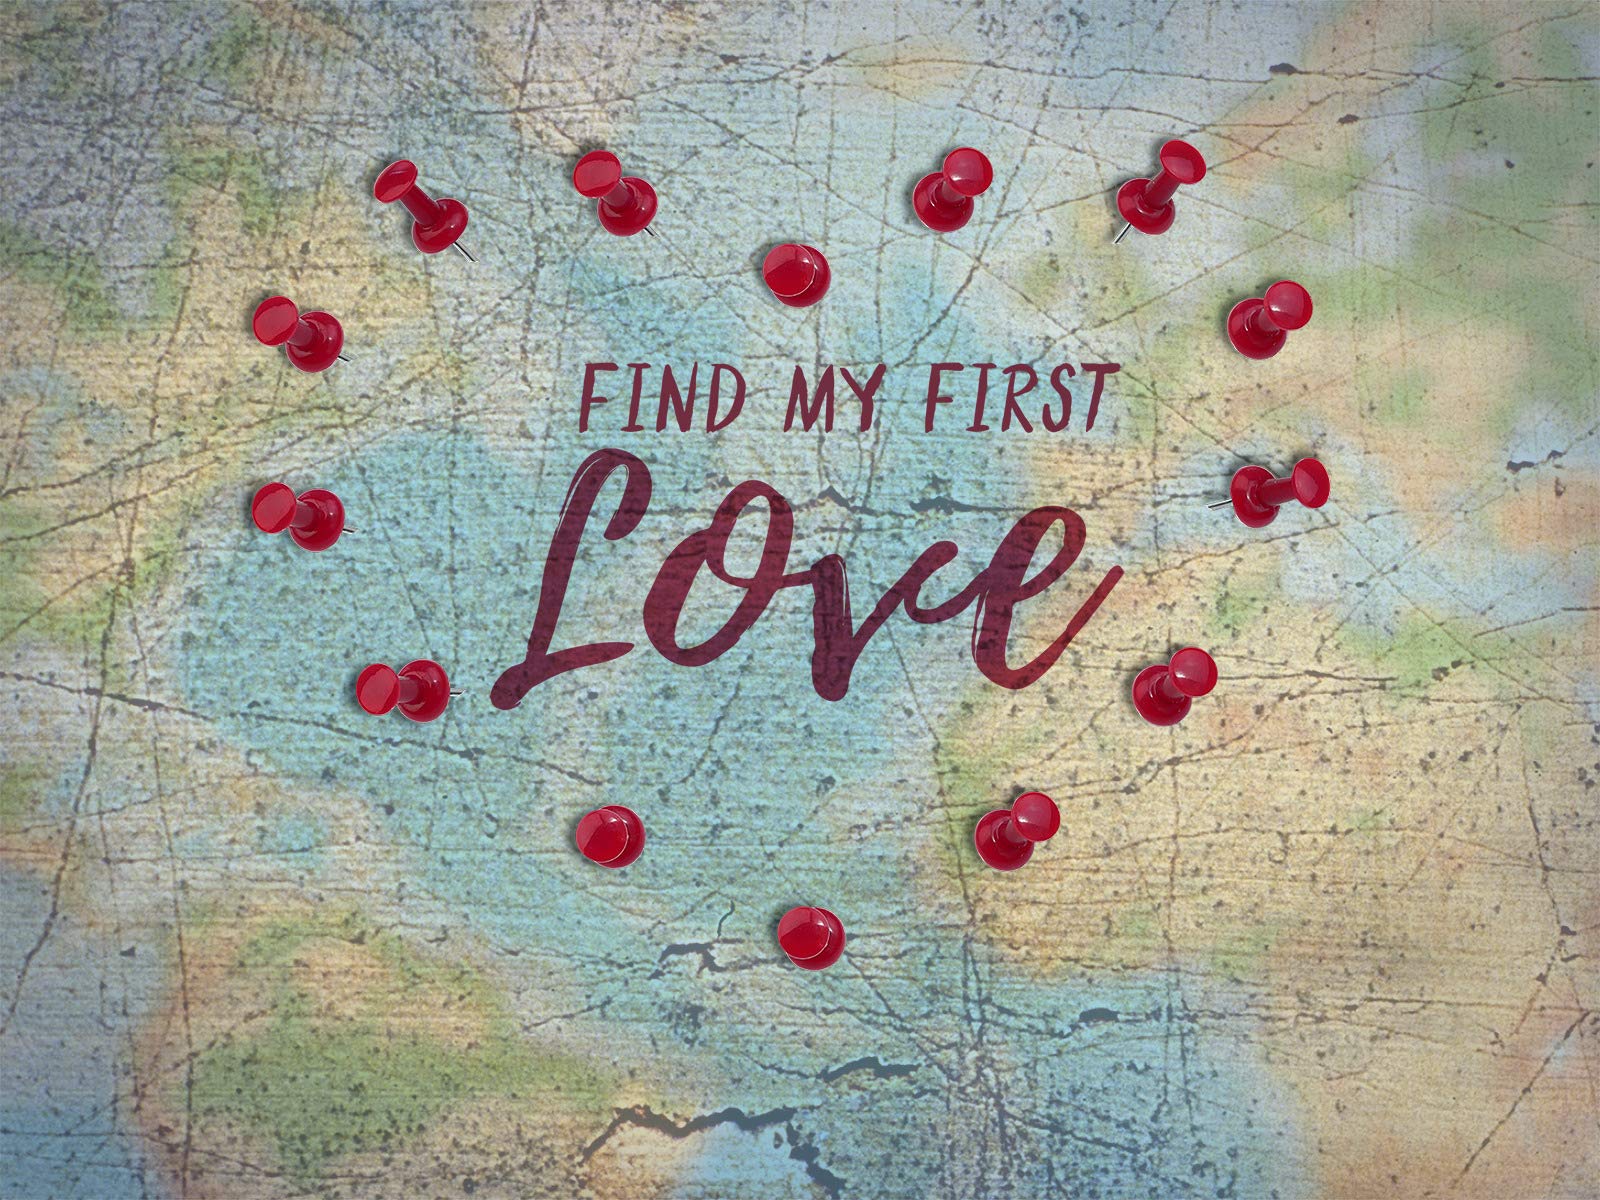 Find my first love